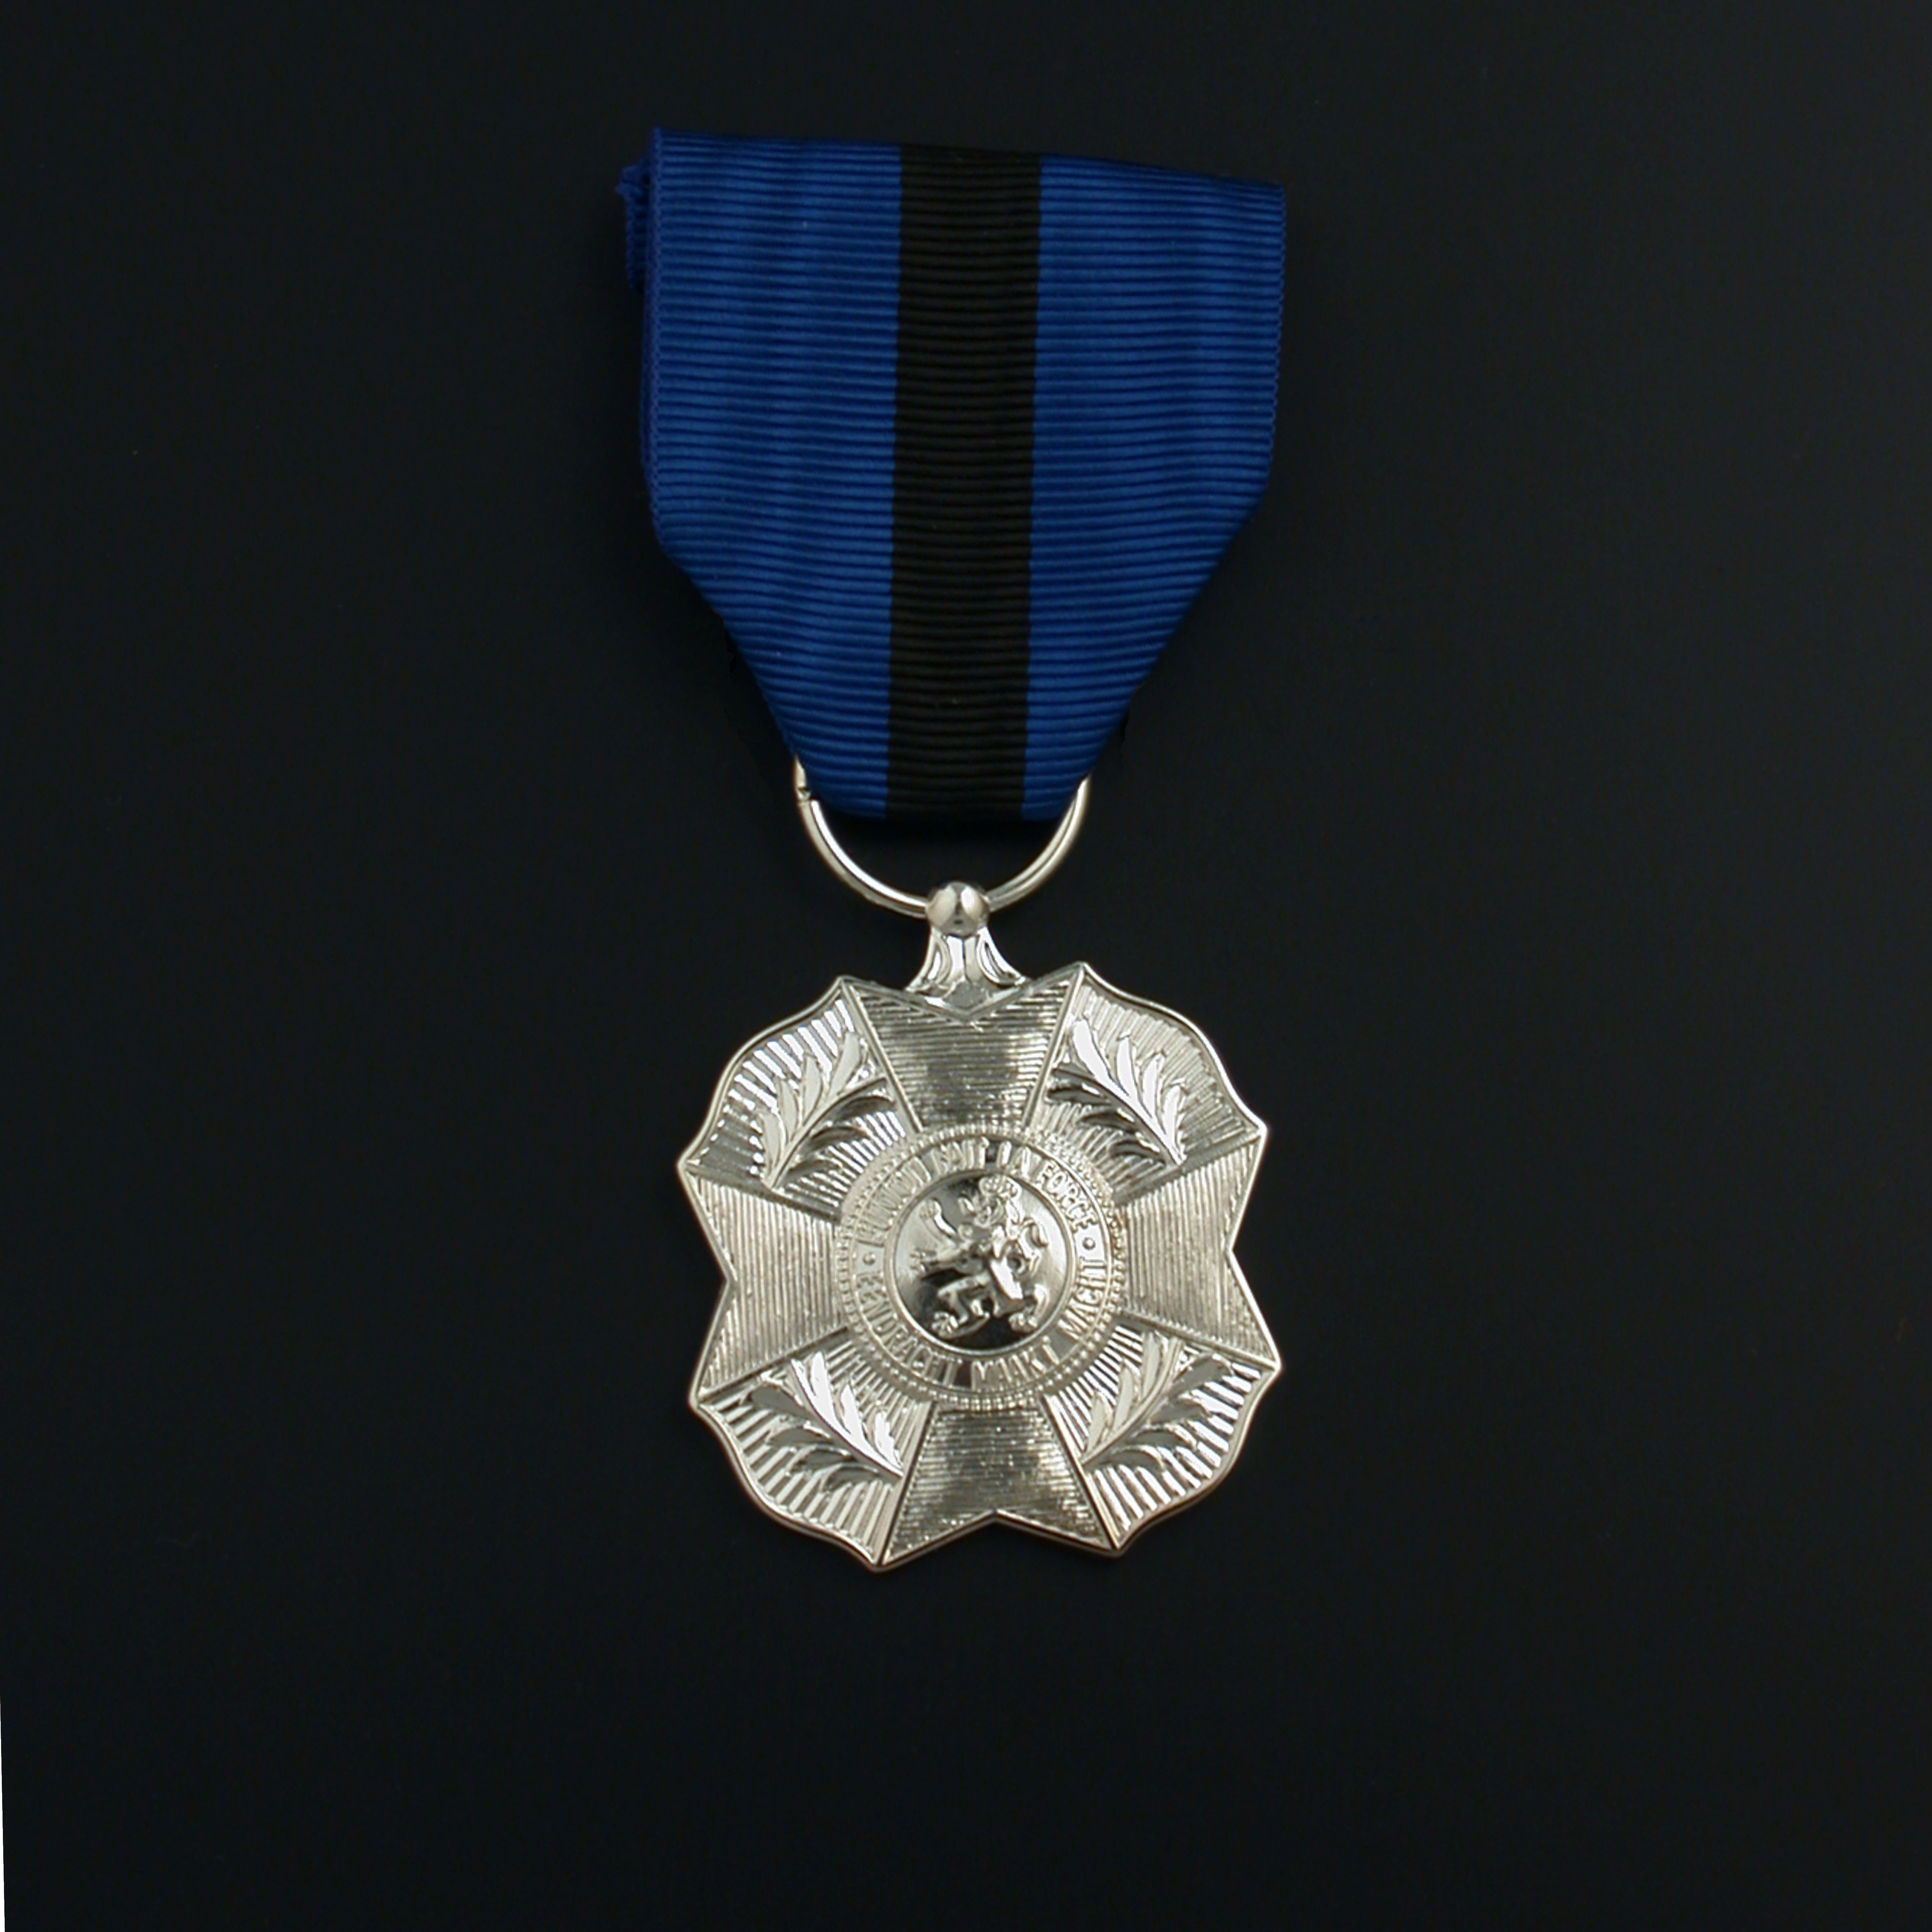 officieel-ereteken-orde-leopold-ii-zilveren-medaille-01-01-04-orde-leopold-ii-zilveren-medaille-officieel-model.jpg